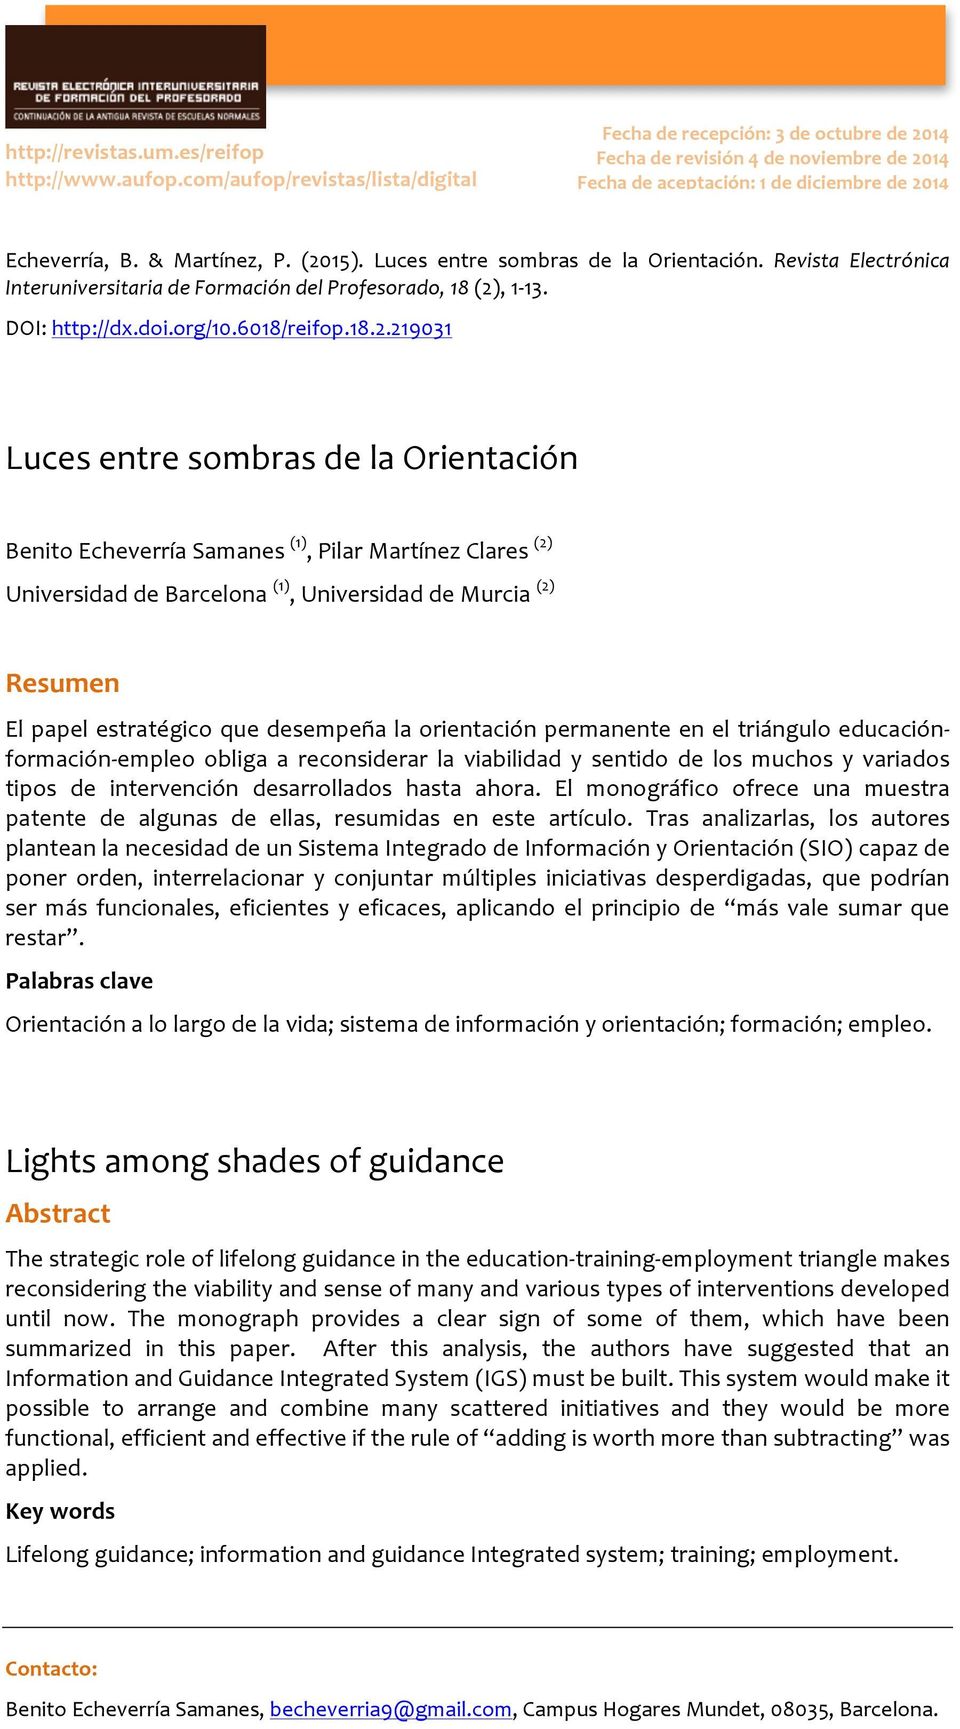 Luces entre sombras de la Orientación. Revista Electrónica Interuniversitaria de Formación del Profesorado, 18 (2)